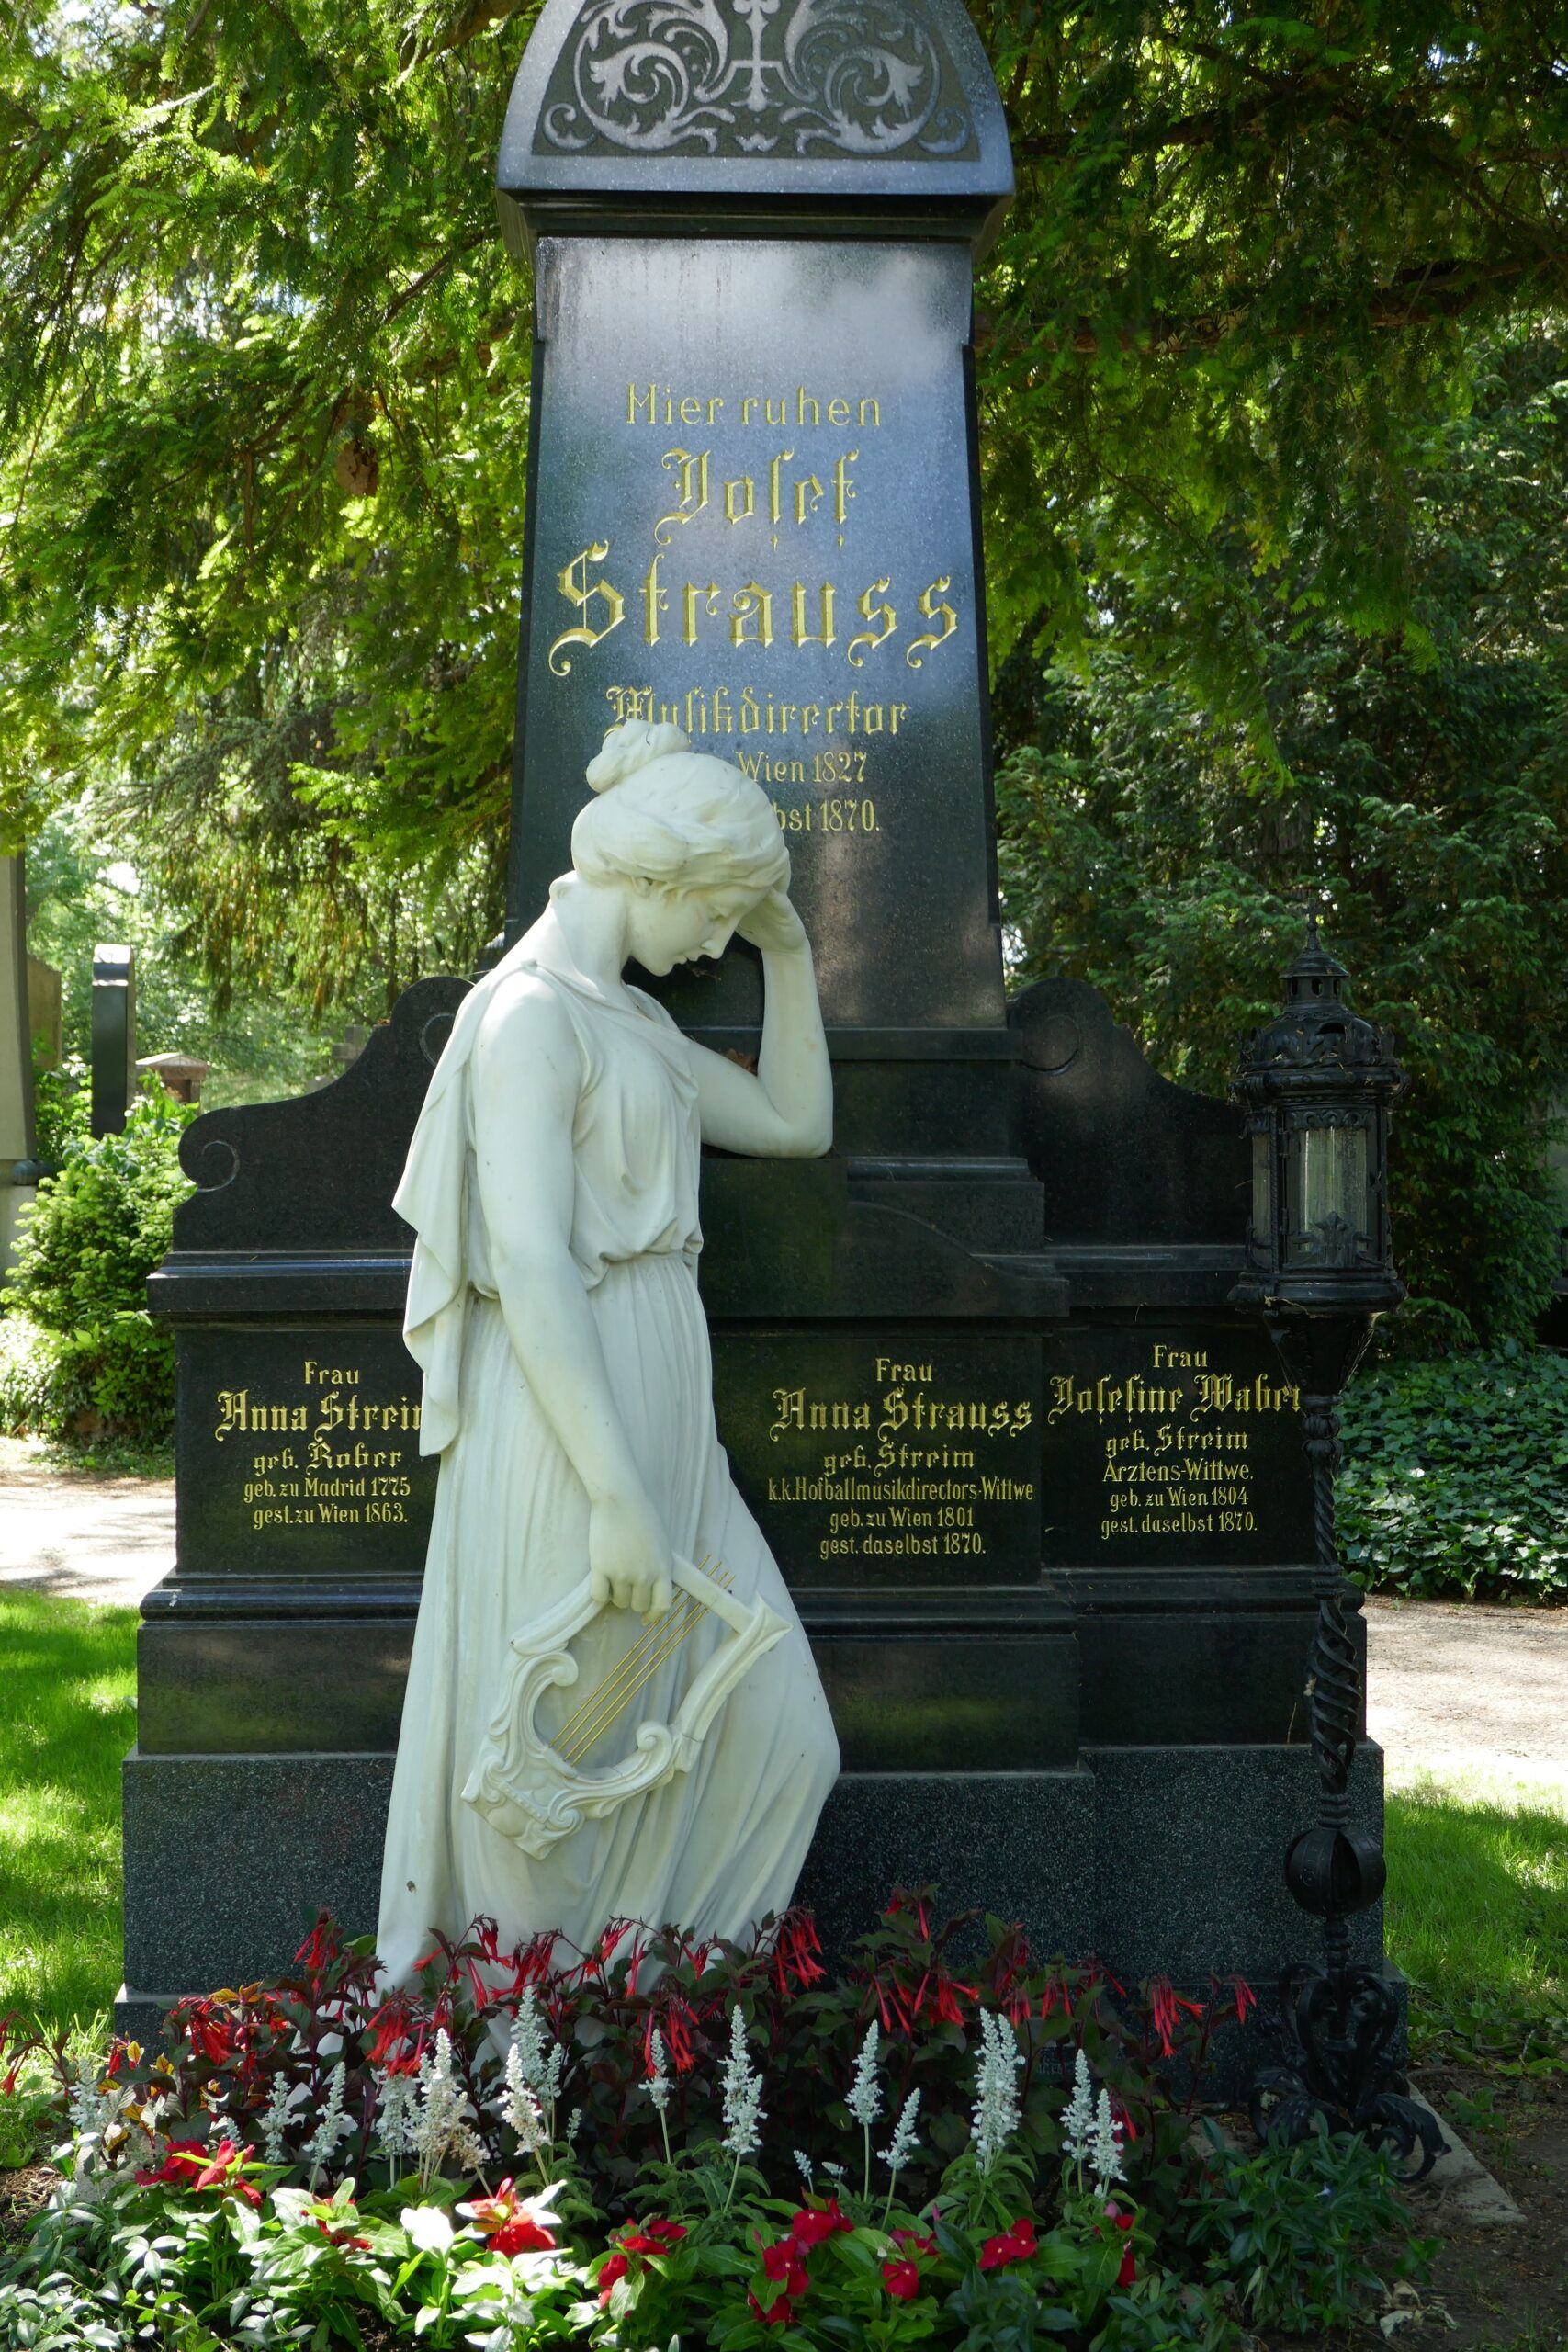 La tumba de Josef Strauss y otros miembros de la saga de músicos vieneses.